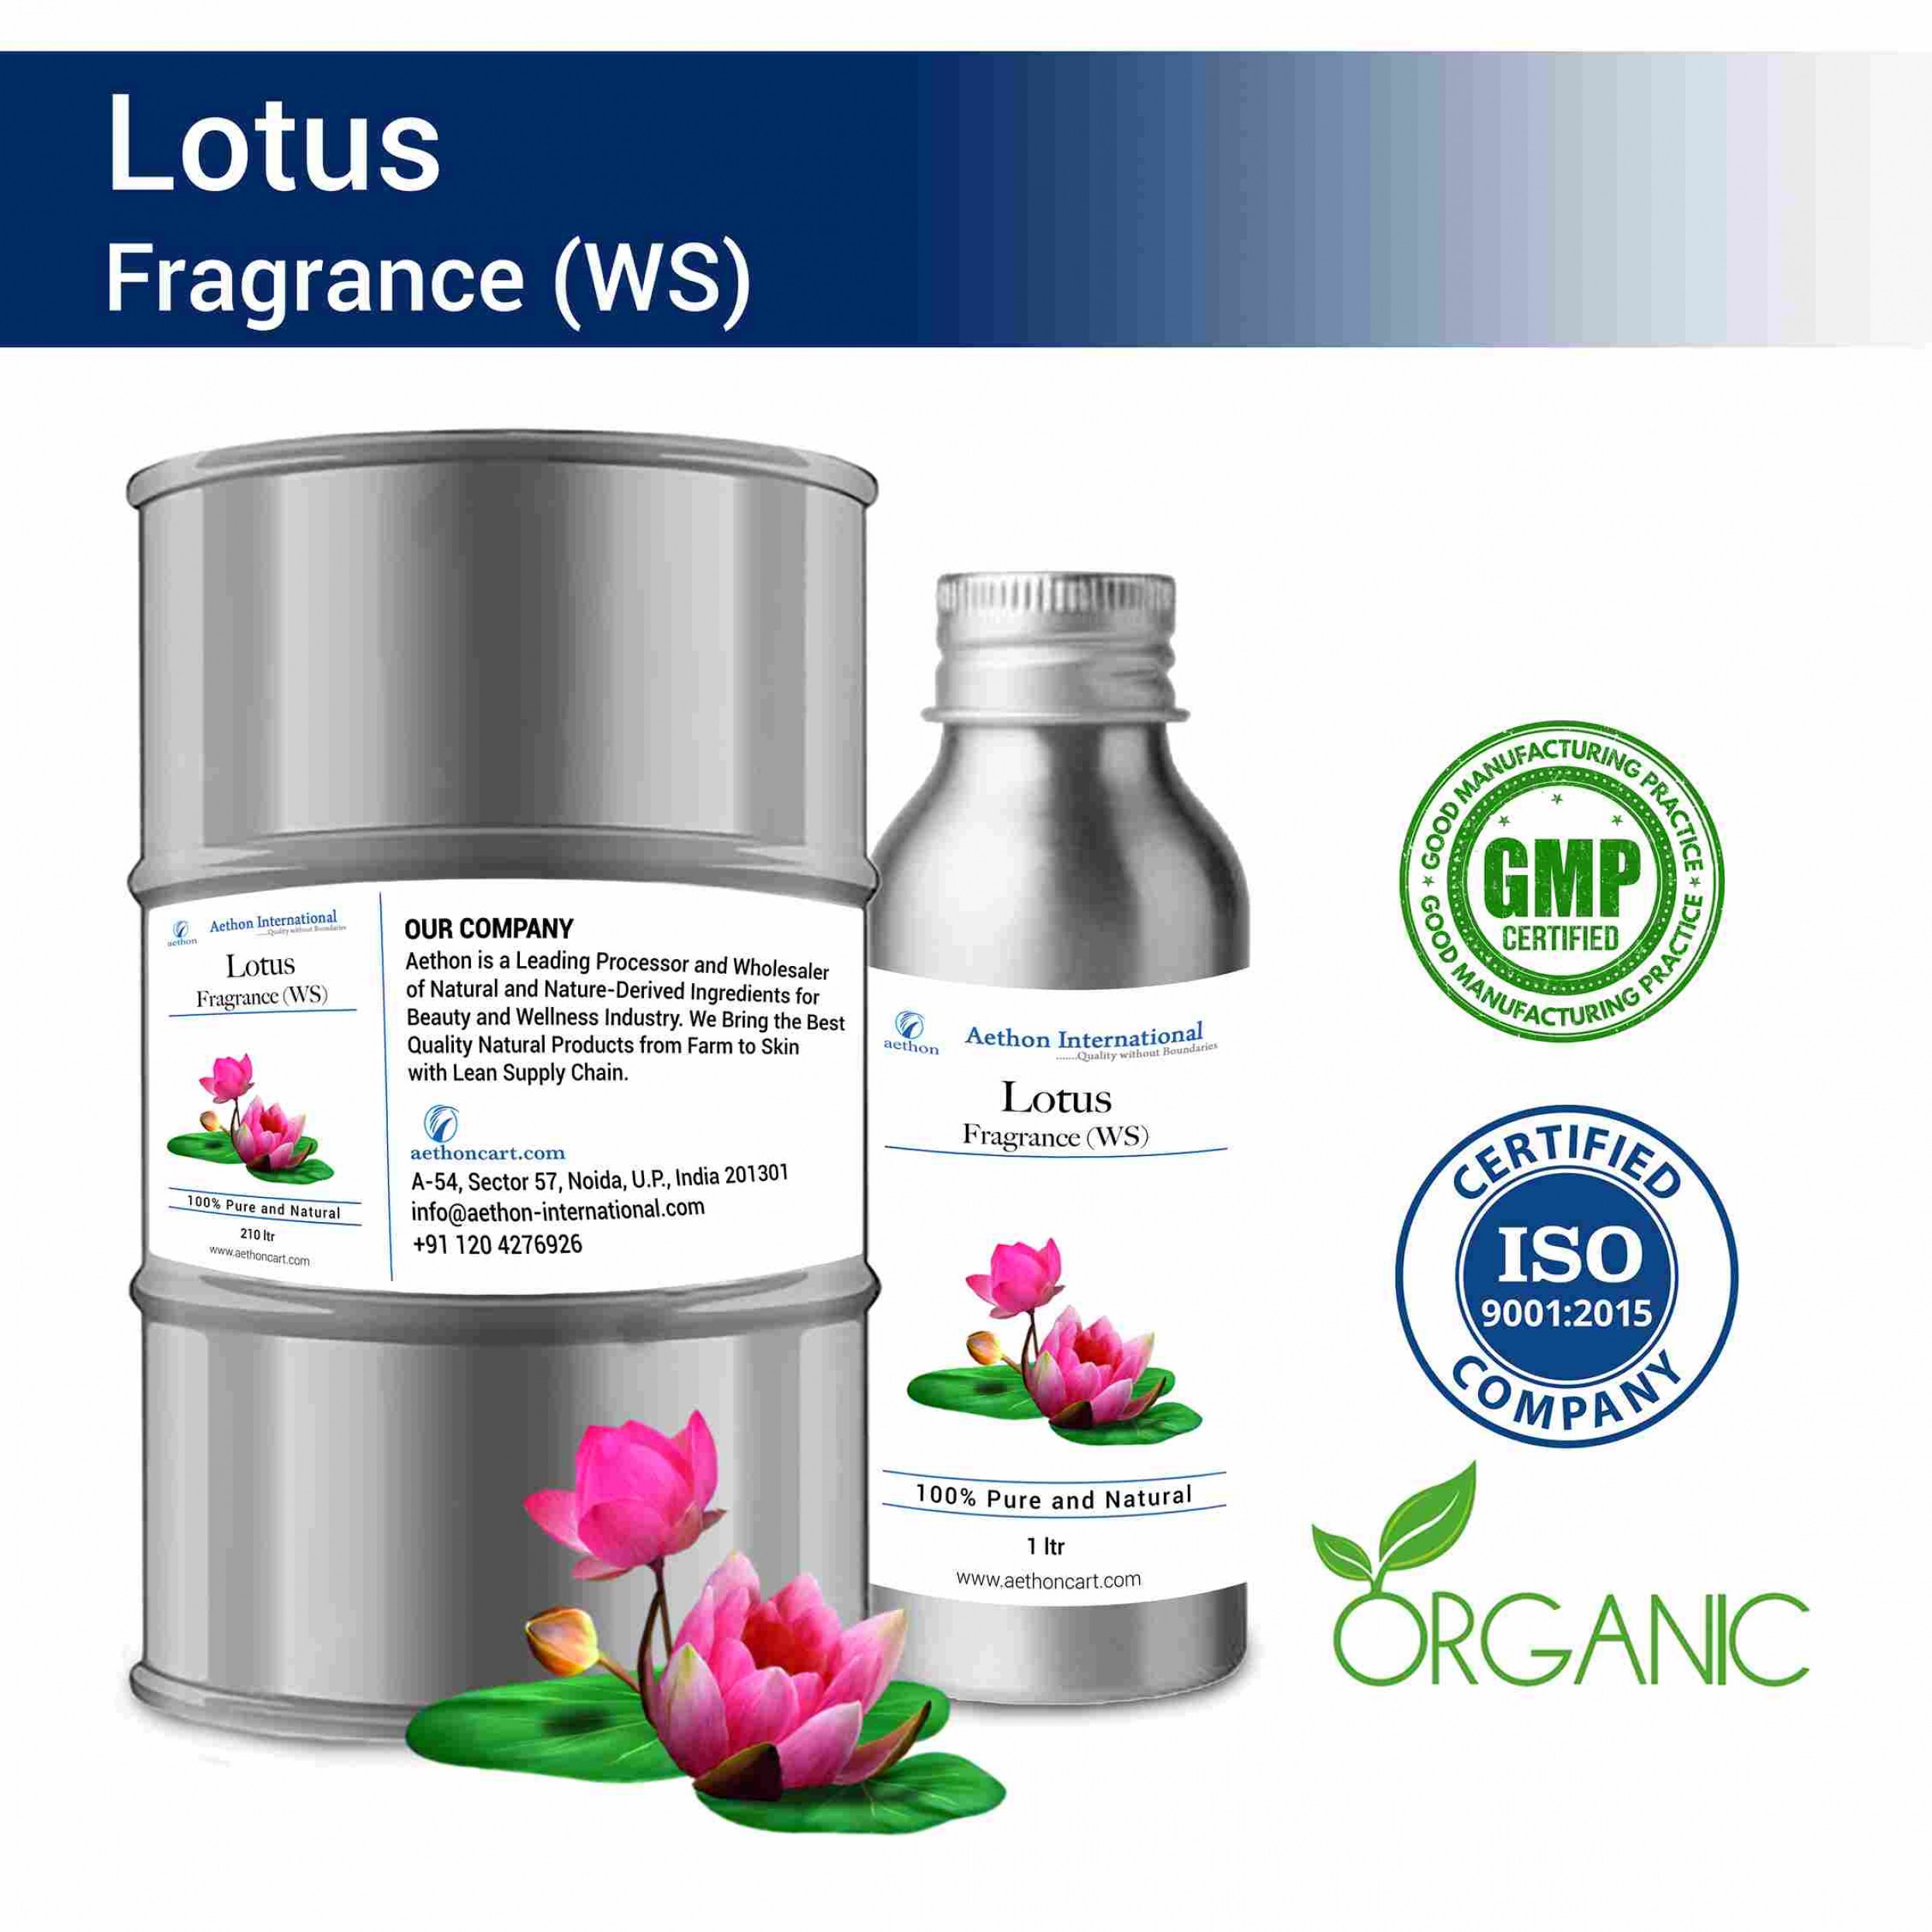 Lotus Fragrance (WS)